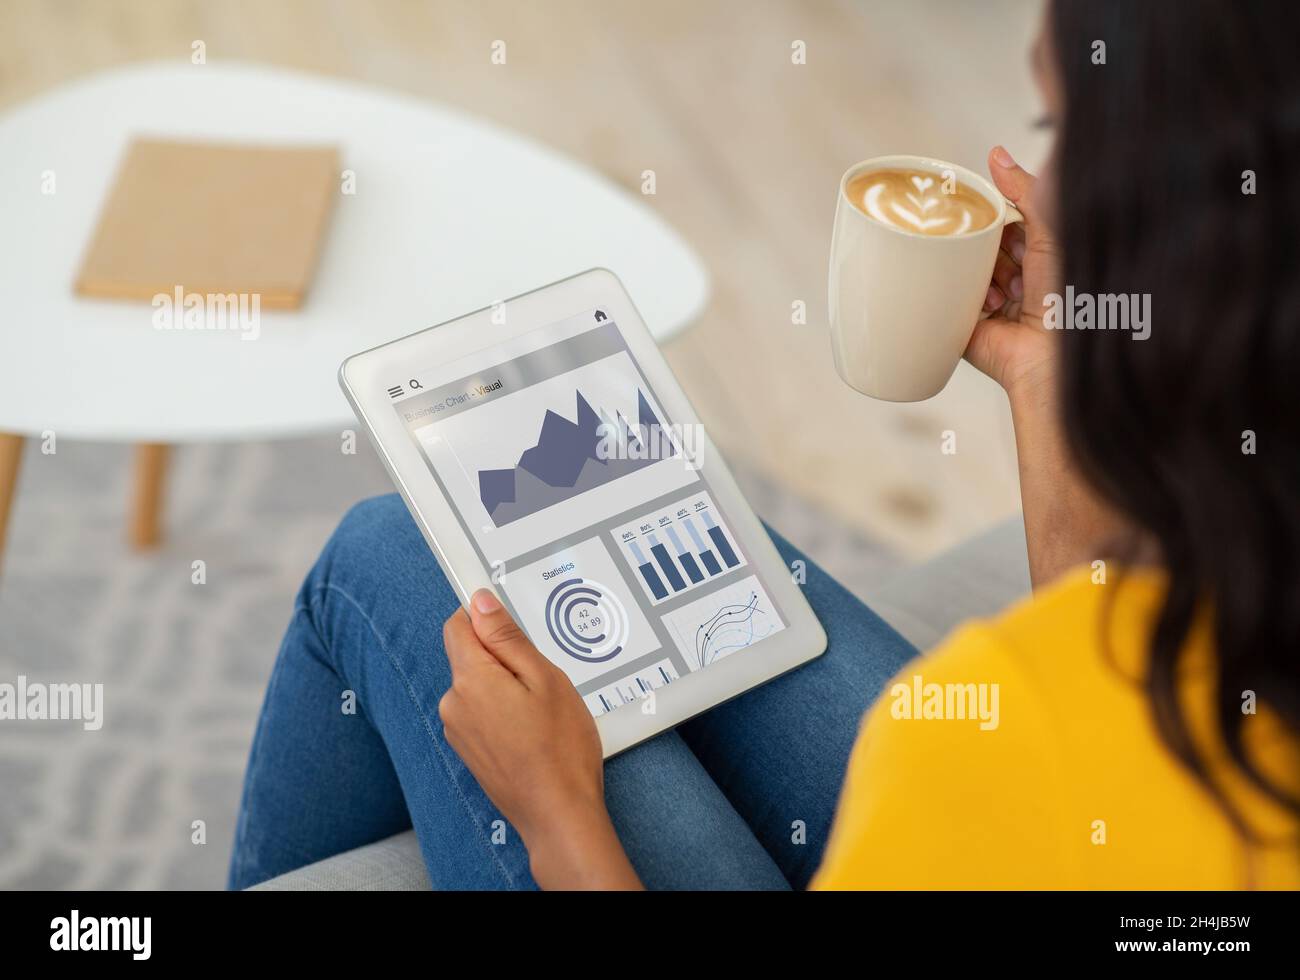 Jeune femme noire se détendant à la maison, buvant un café et vérifiant l'application passive de revenu à temps libre, collage Banque D'Images